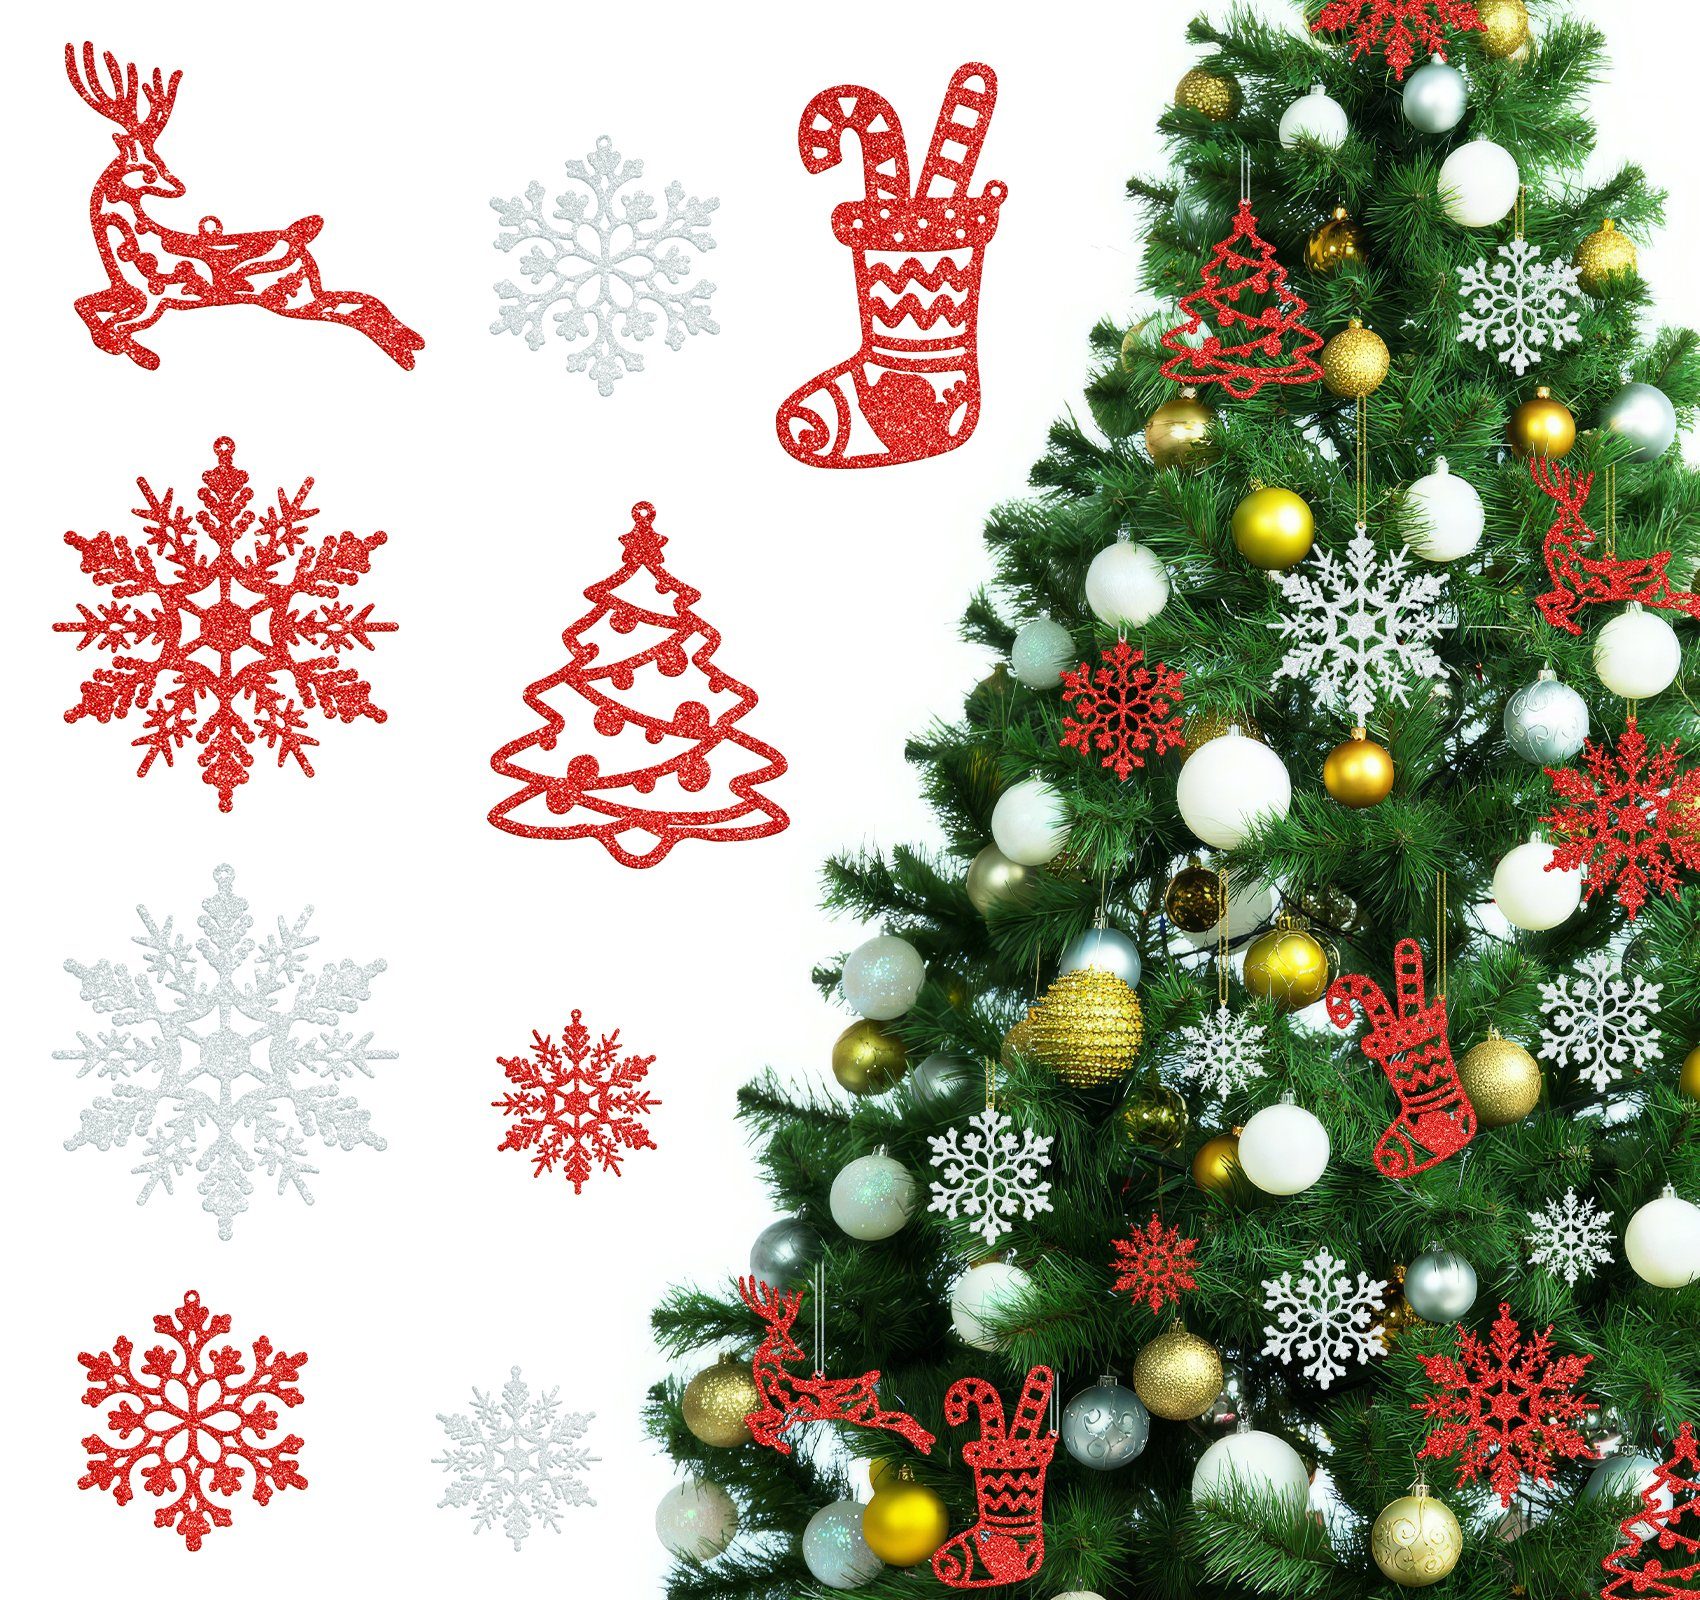 Weihnachtsbaumdecke 65 christbaumschmuck Rot-Weiß deko schneeflocken schneeflocken Stück Homewit